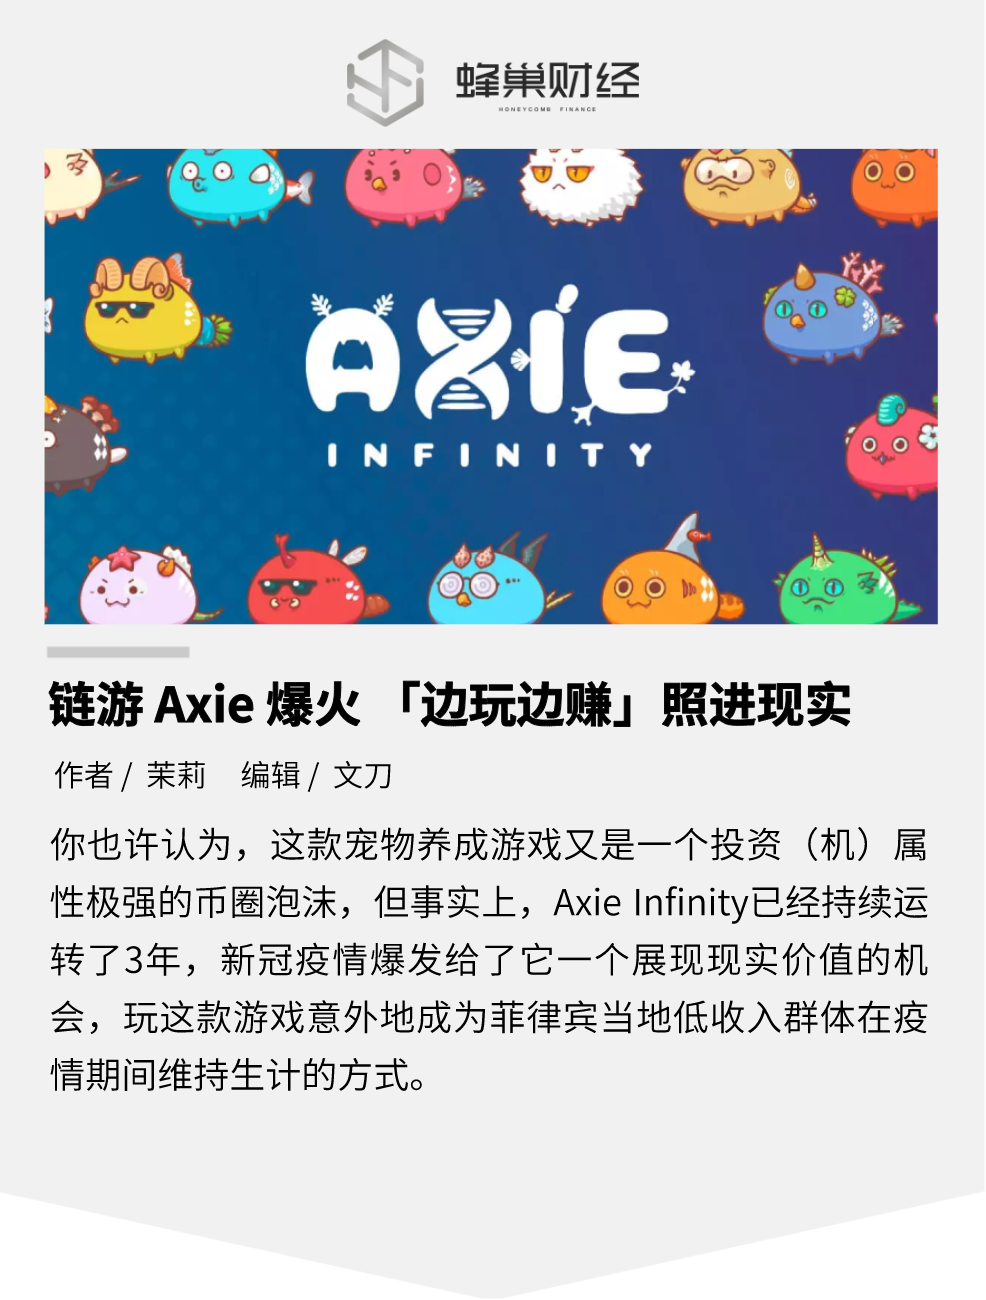 链游Axie Infinity爆火 「边玩边赚」照进现实